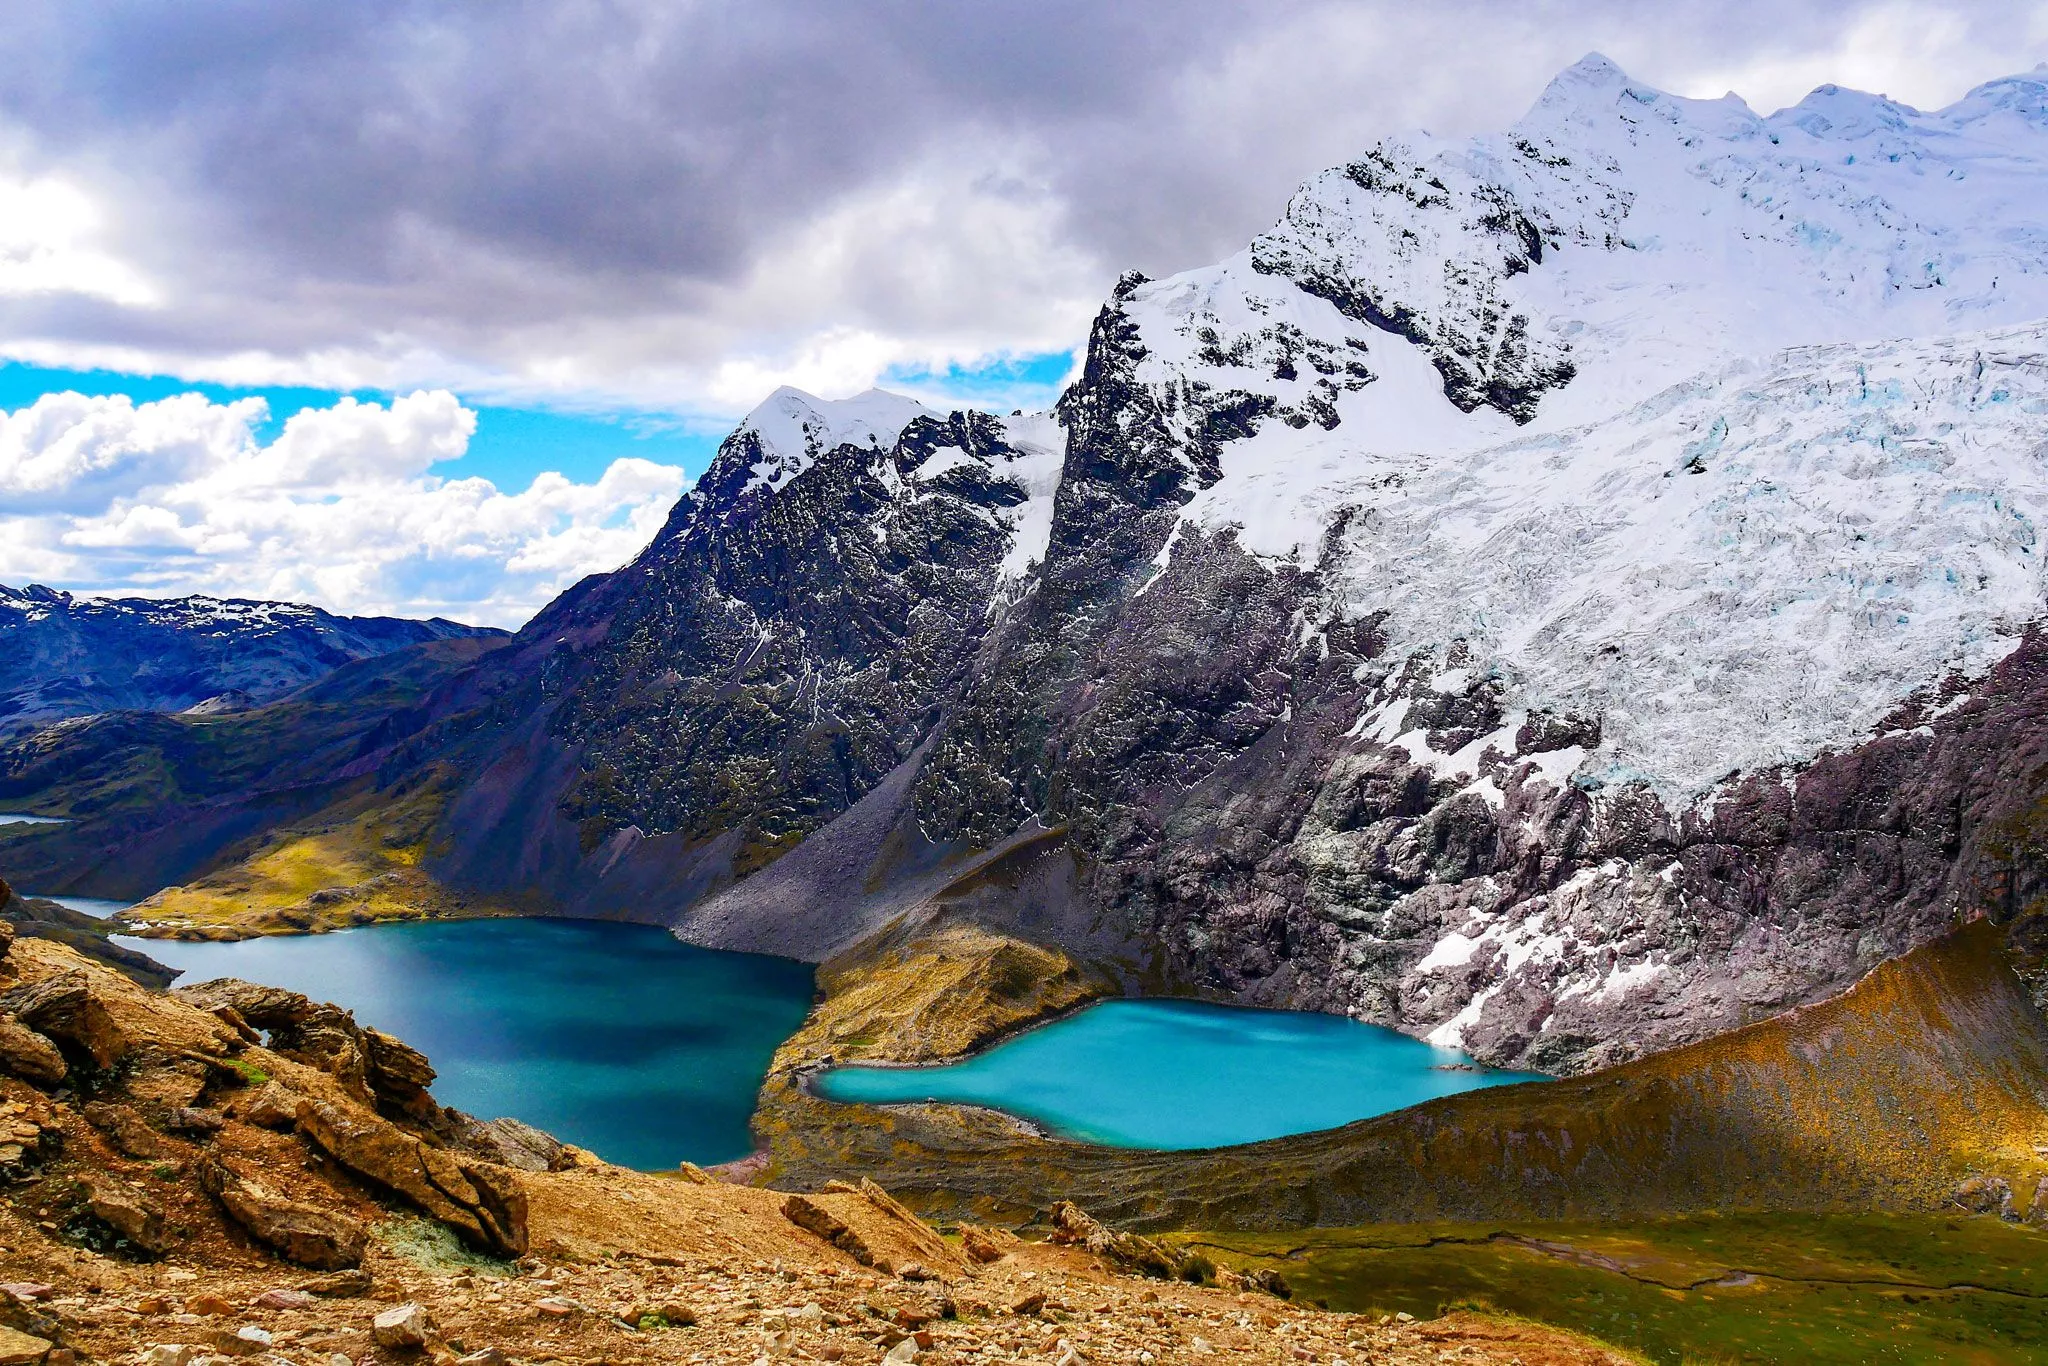 Ausangate in Peru, South America | Trekking & Hiking - Rated 0.8